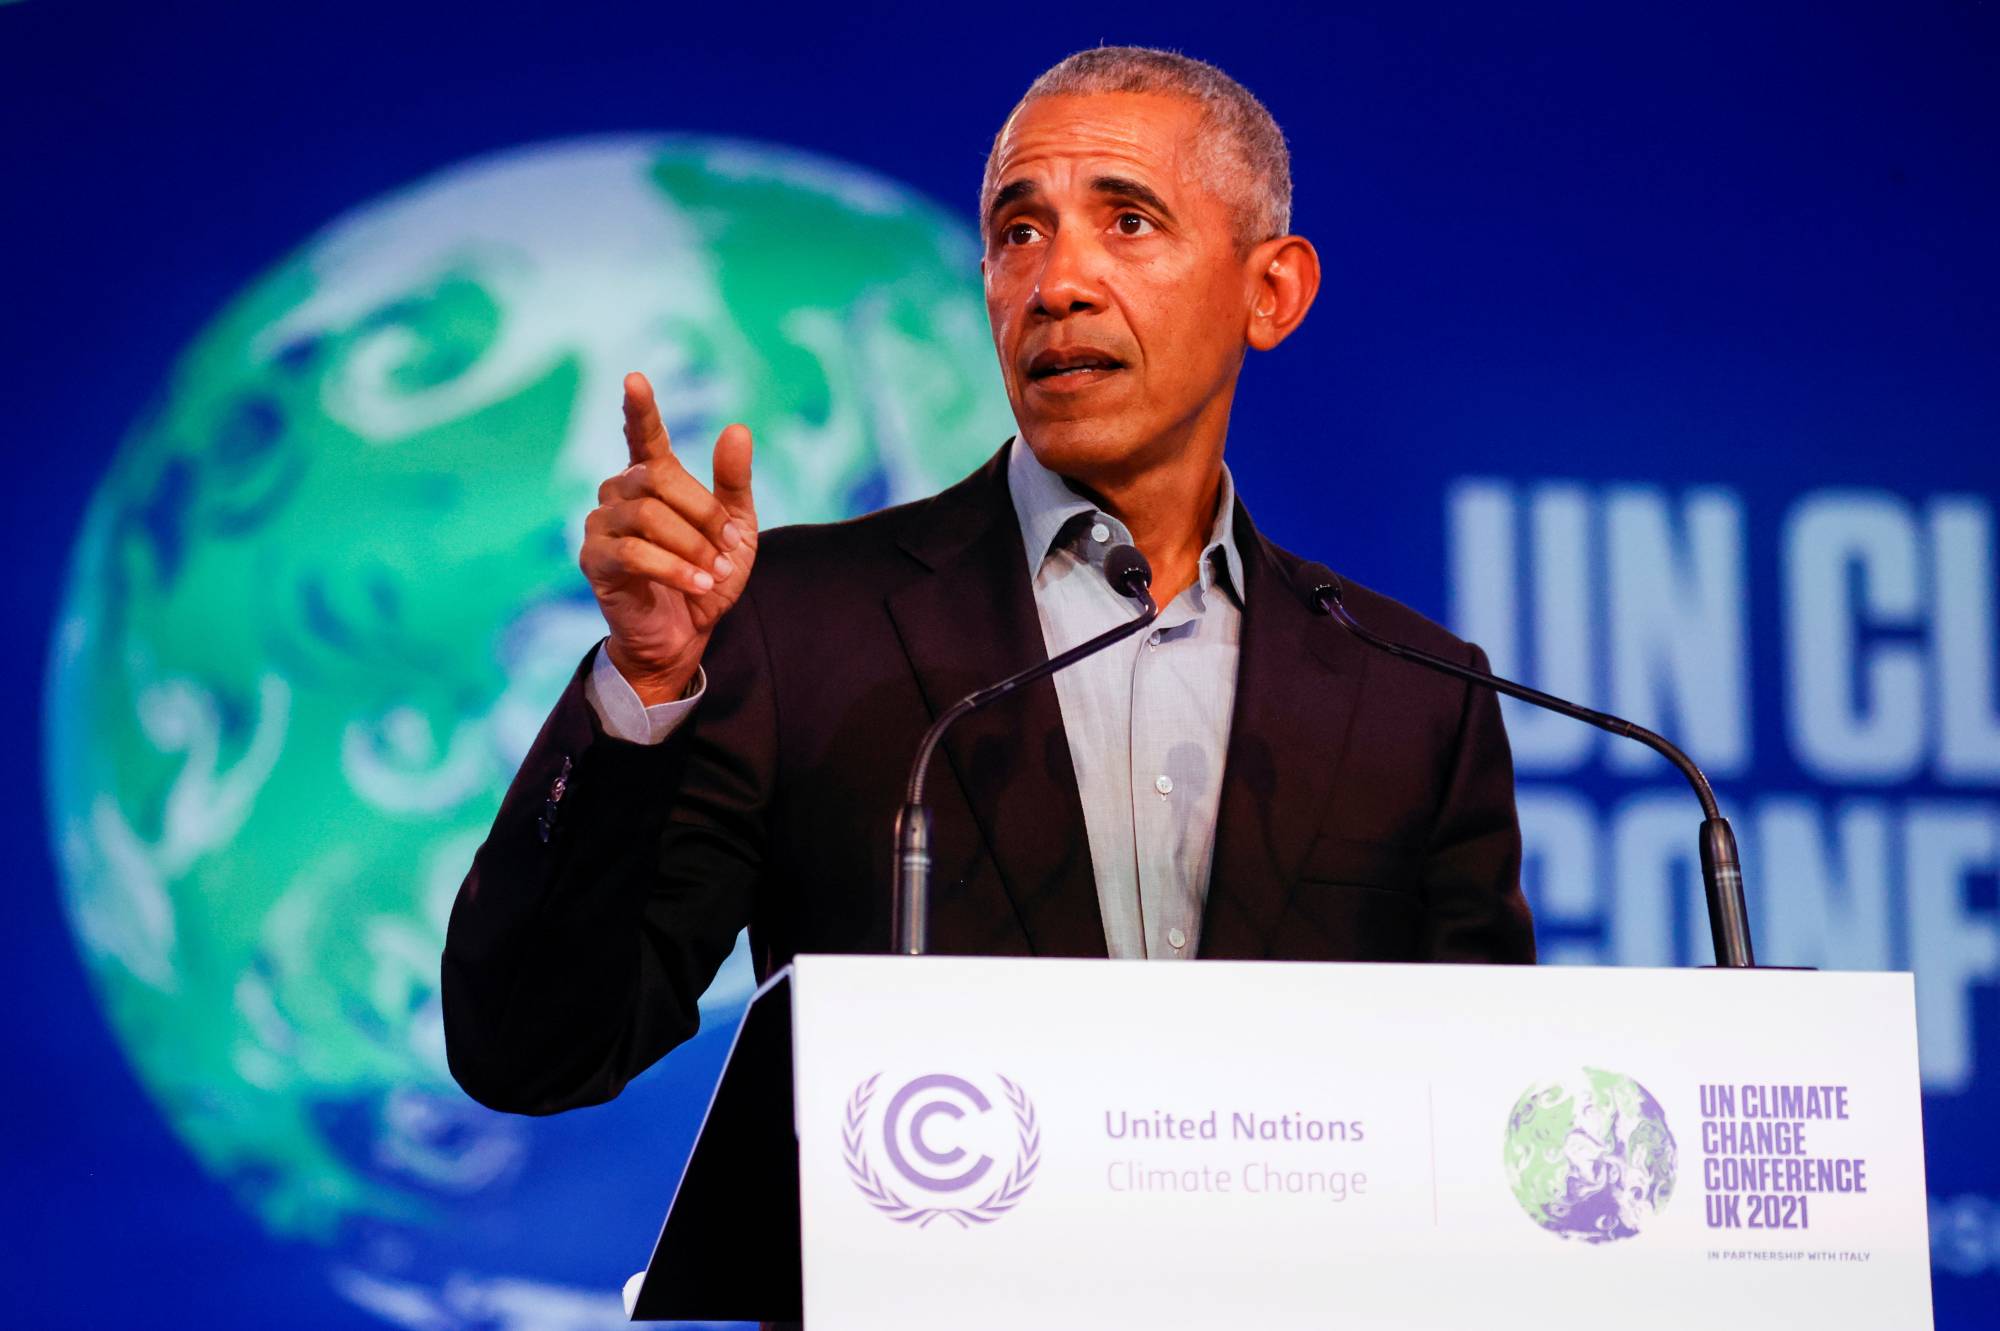 Barack Obama Speaks At COP26